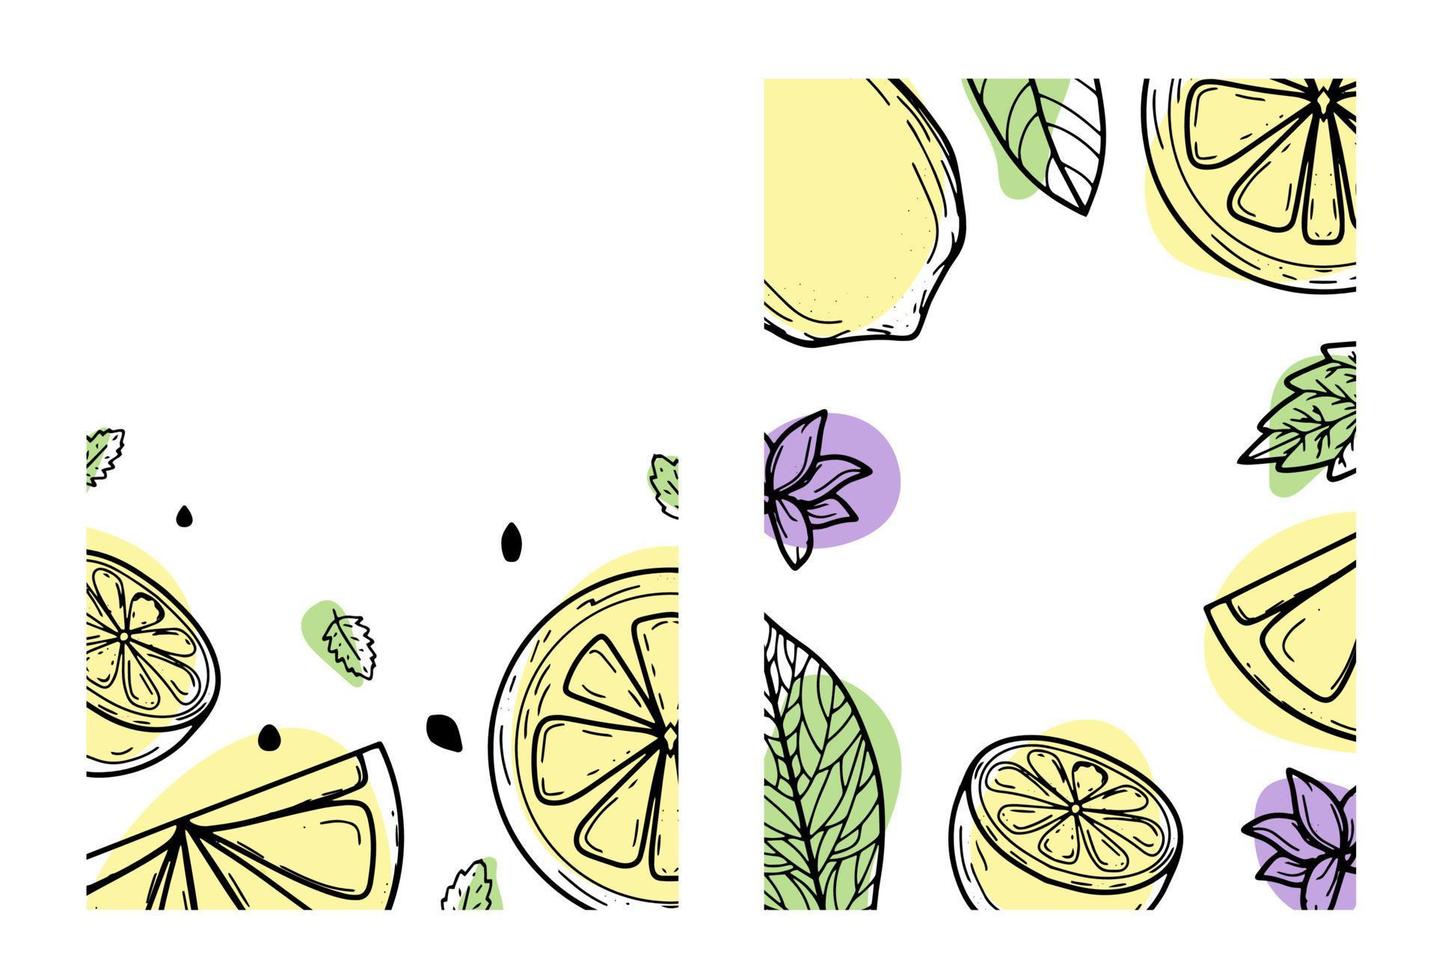 définir l'arrière-plan avec citron, fleur, feuilles. illustration vectorielle dessinée à la main de fruits. à la manière d'une gravure à taches colorées.agrumes, dessin botanique. pour affiches, estampes, papiers peints, couvertures vecteur